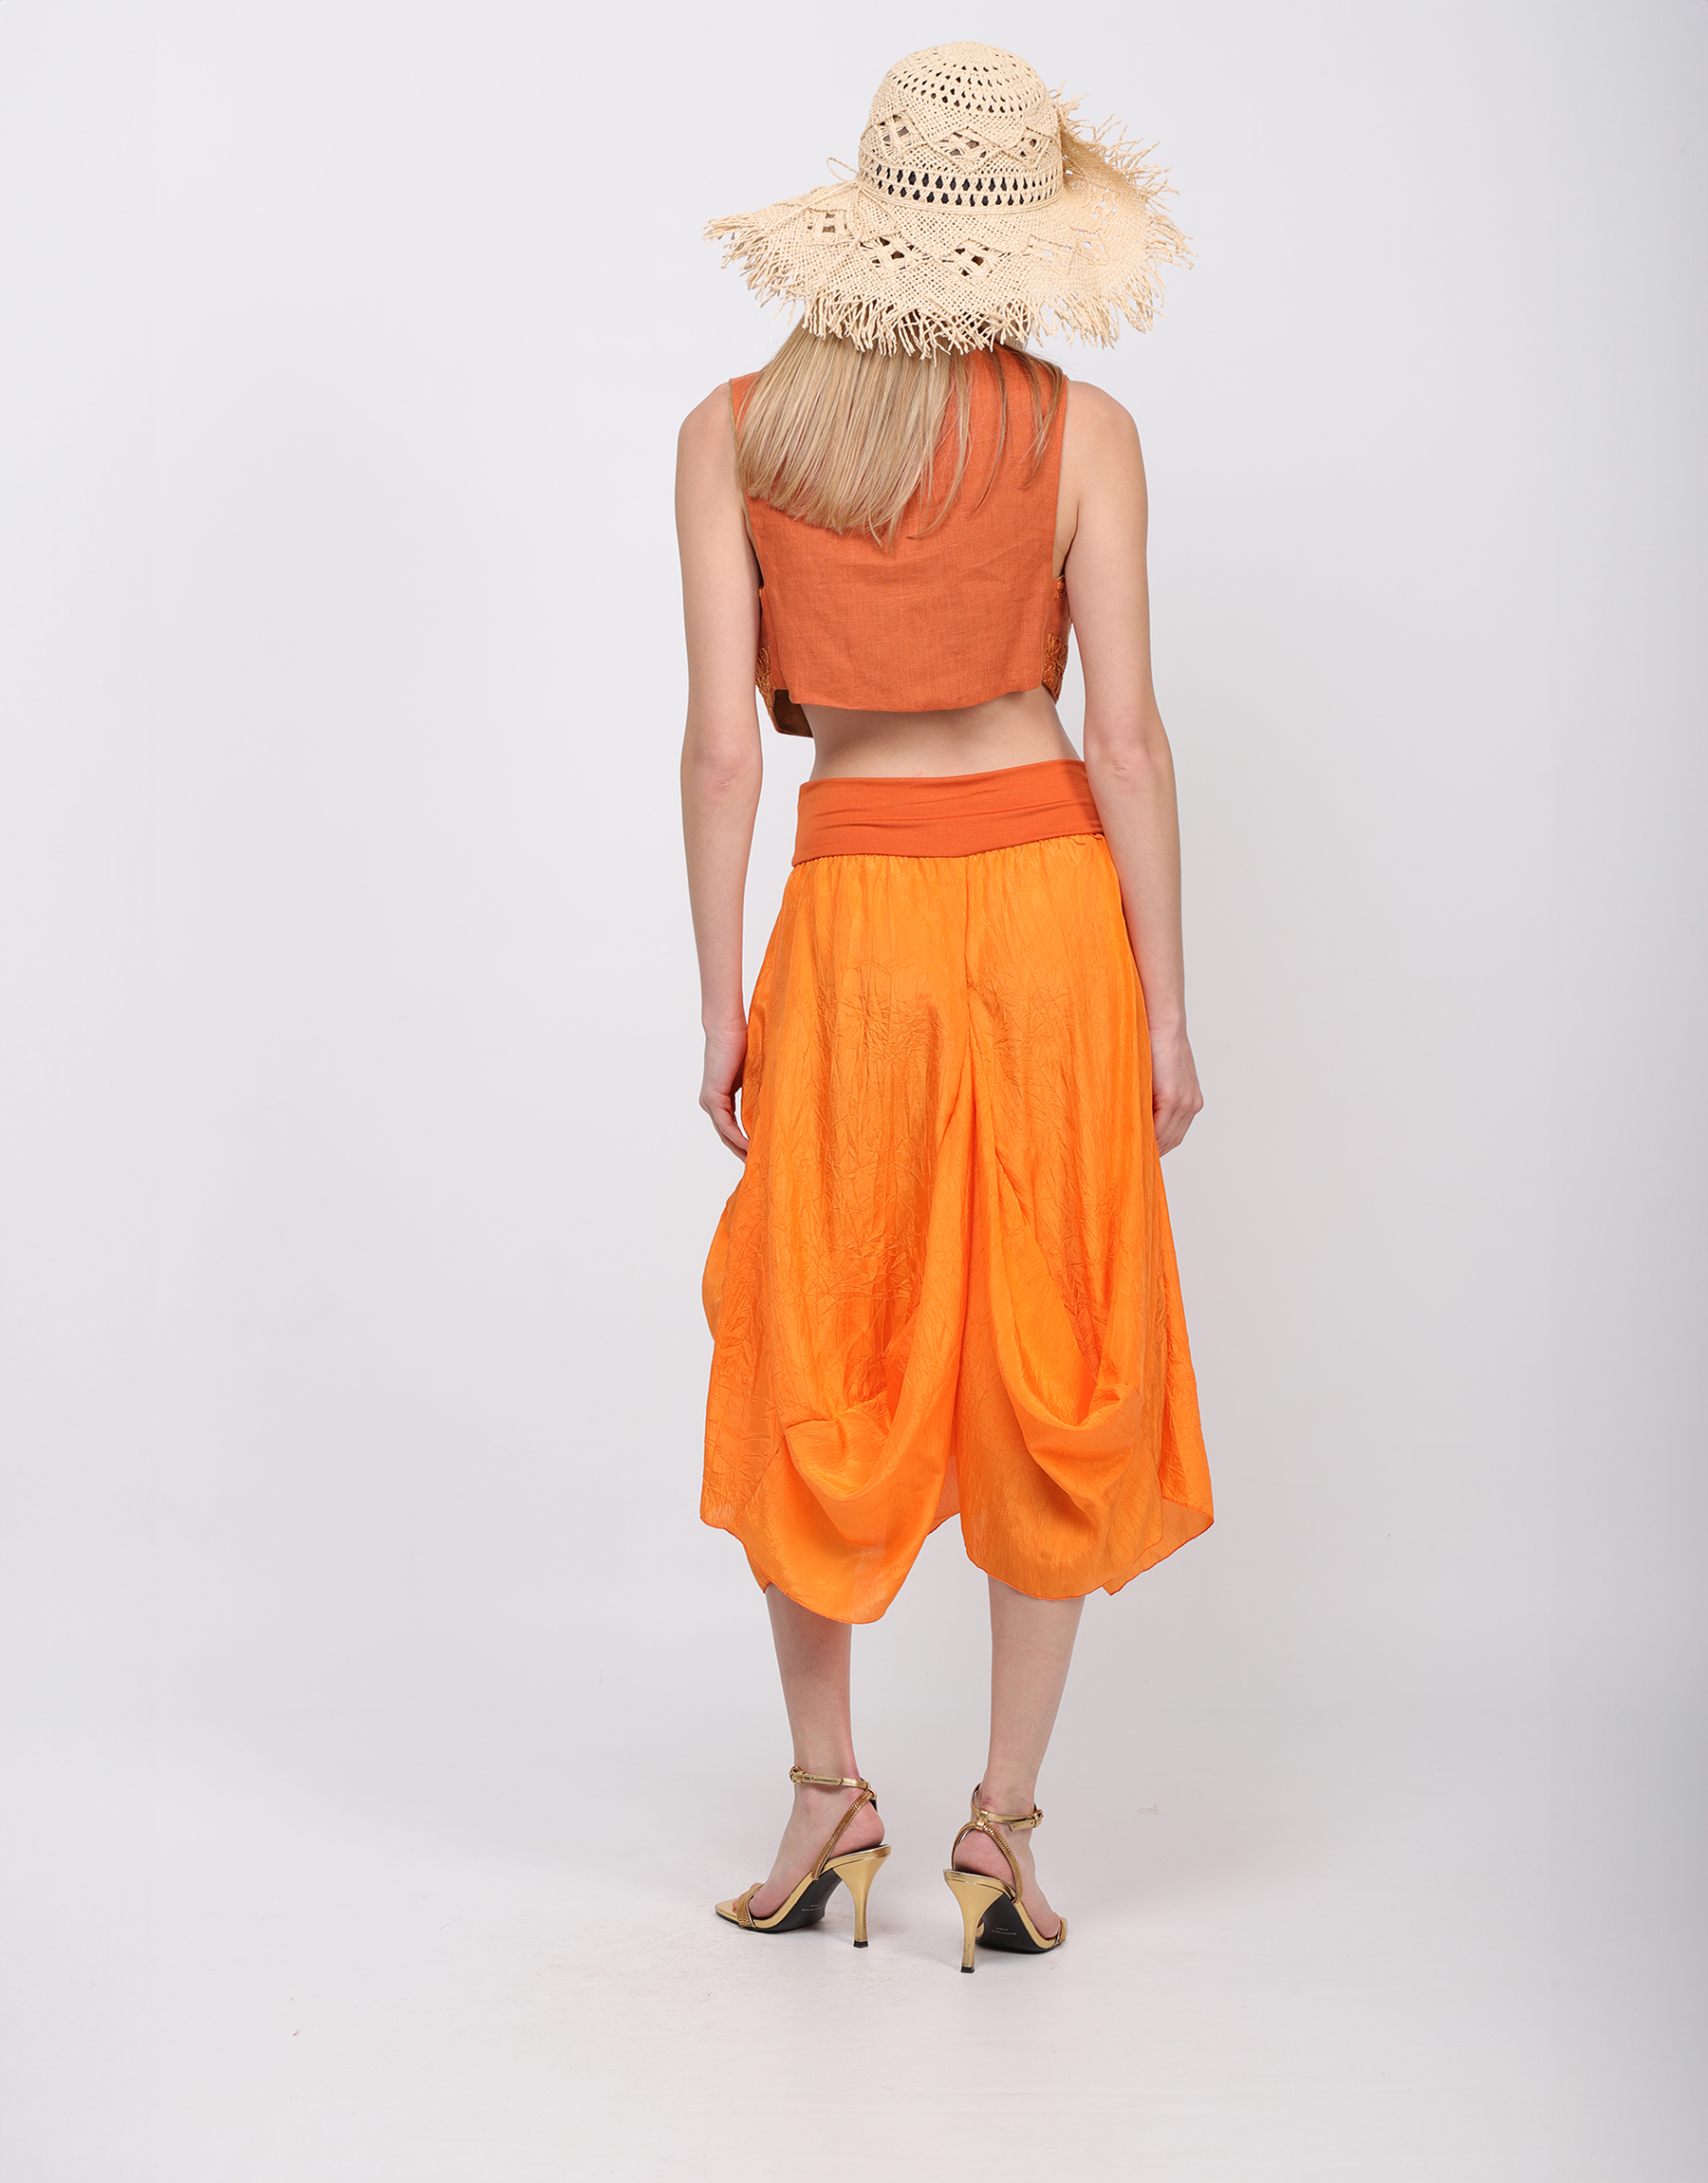 Long flowing skirt in orange or beige crumpled silk